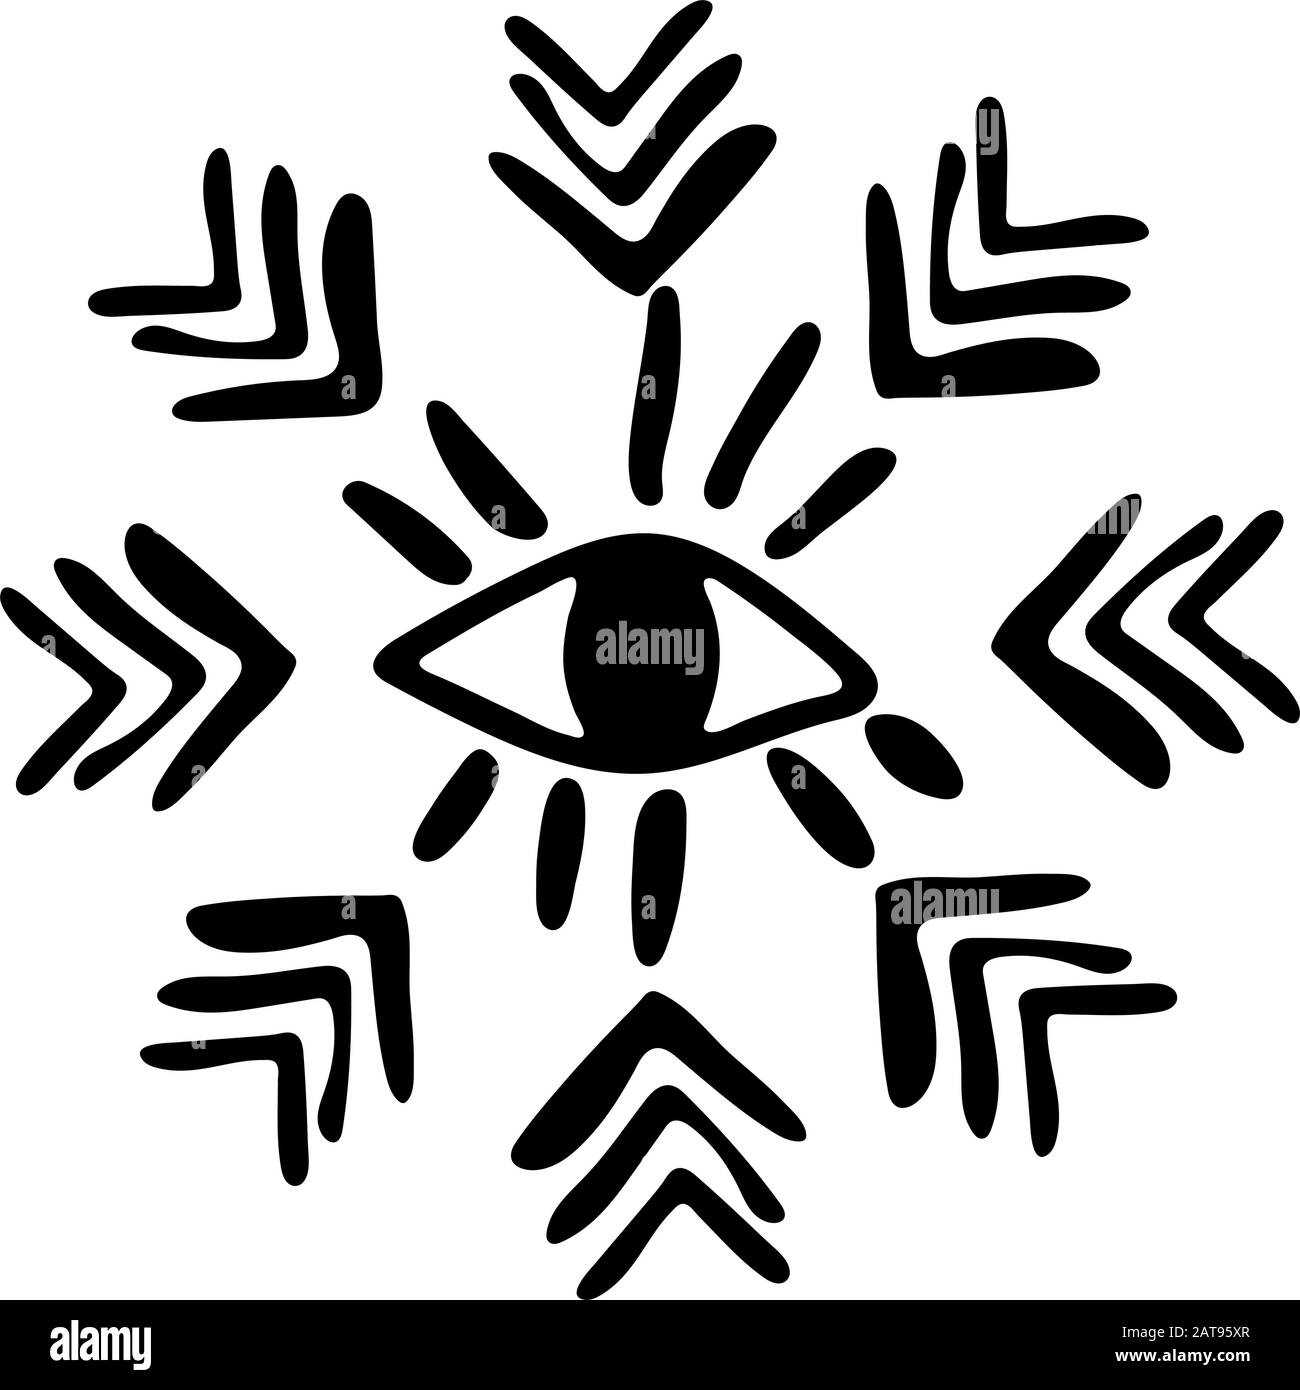 Einheimische amerikanische Kultur. Bild eines großen offenen Auges im Boho-Stil. In einem Kreis angeordnete Hieroglyphen und Pfeile. Schwarz-Weiß-Flachbild. Stock Vektor